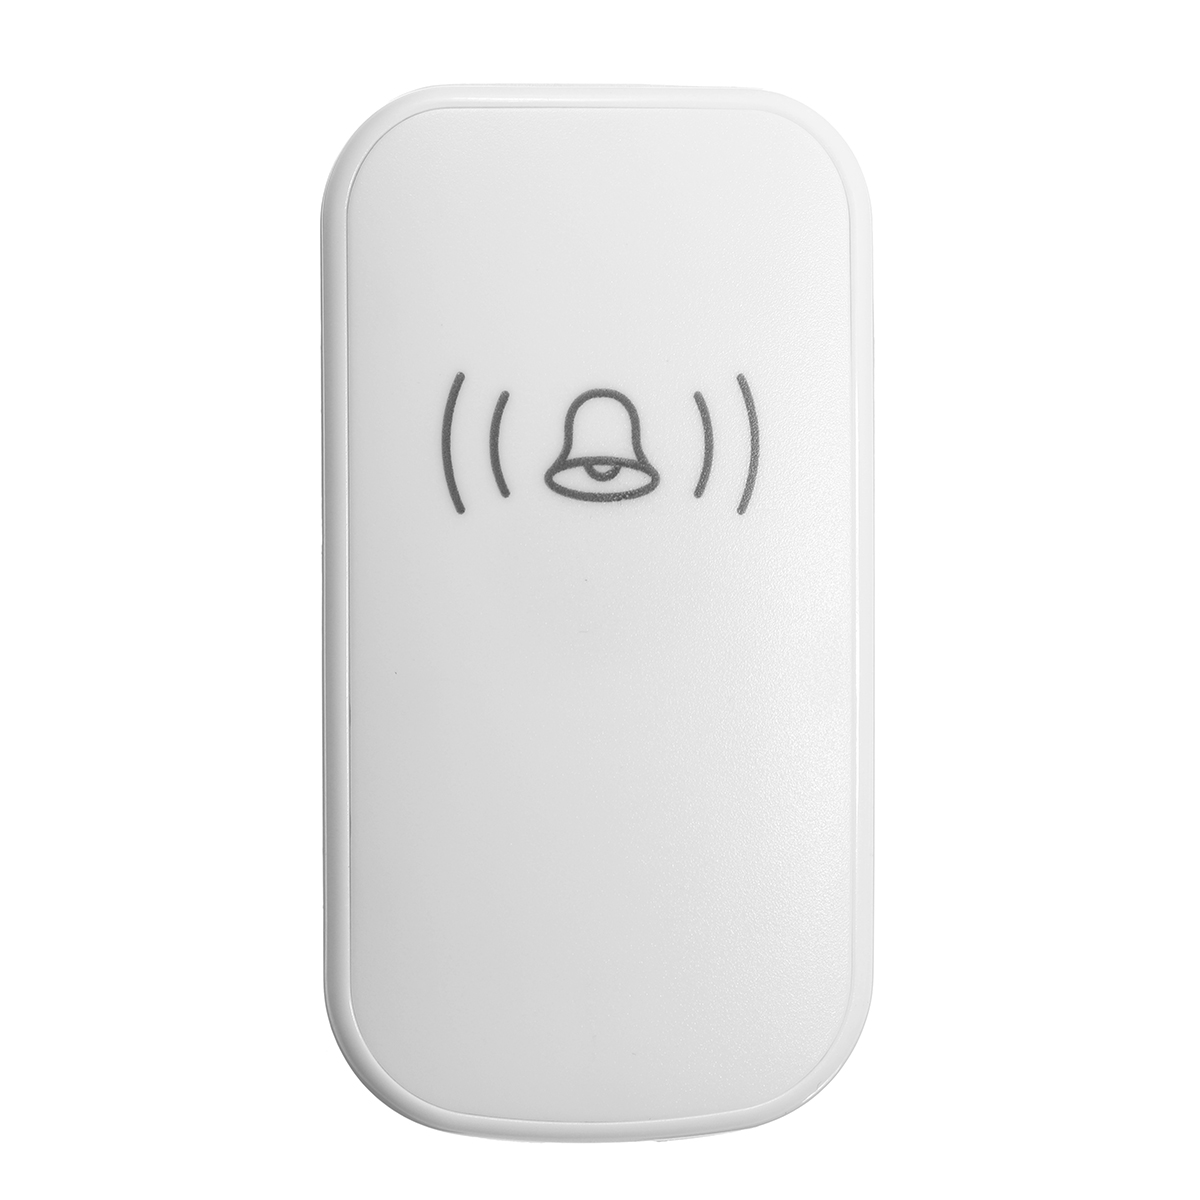 Home-House-4-Volume-Wireless-Doorbell-Chime-2-Receiver--1-Doorbell-1347168-9